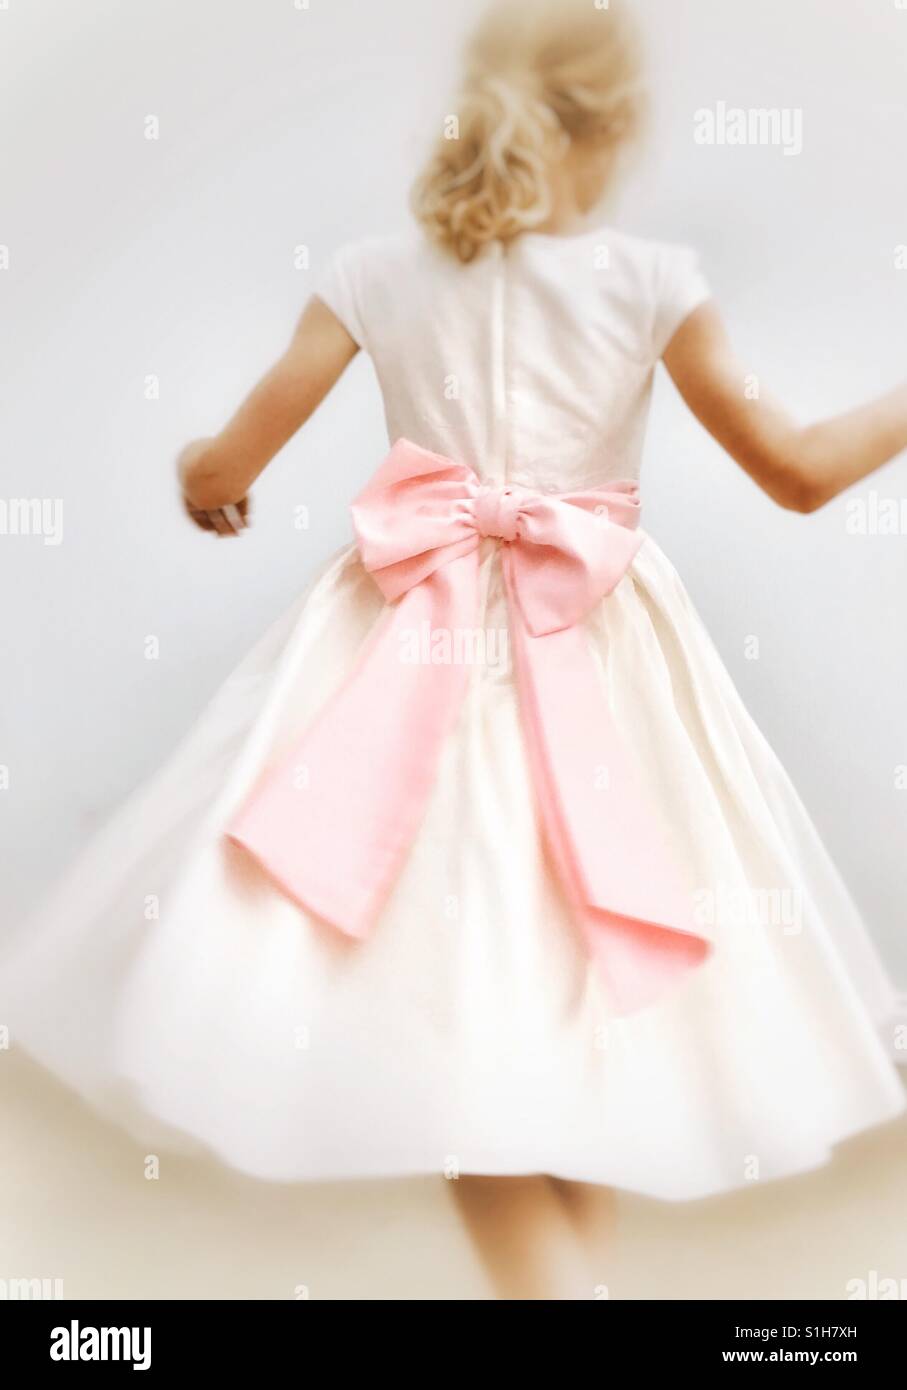 Jeune fille ronde virevoltante dans bridesmaids robe avec grand noeud rose Banque D'Images